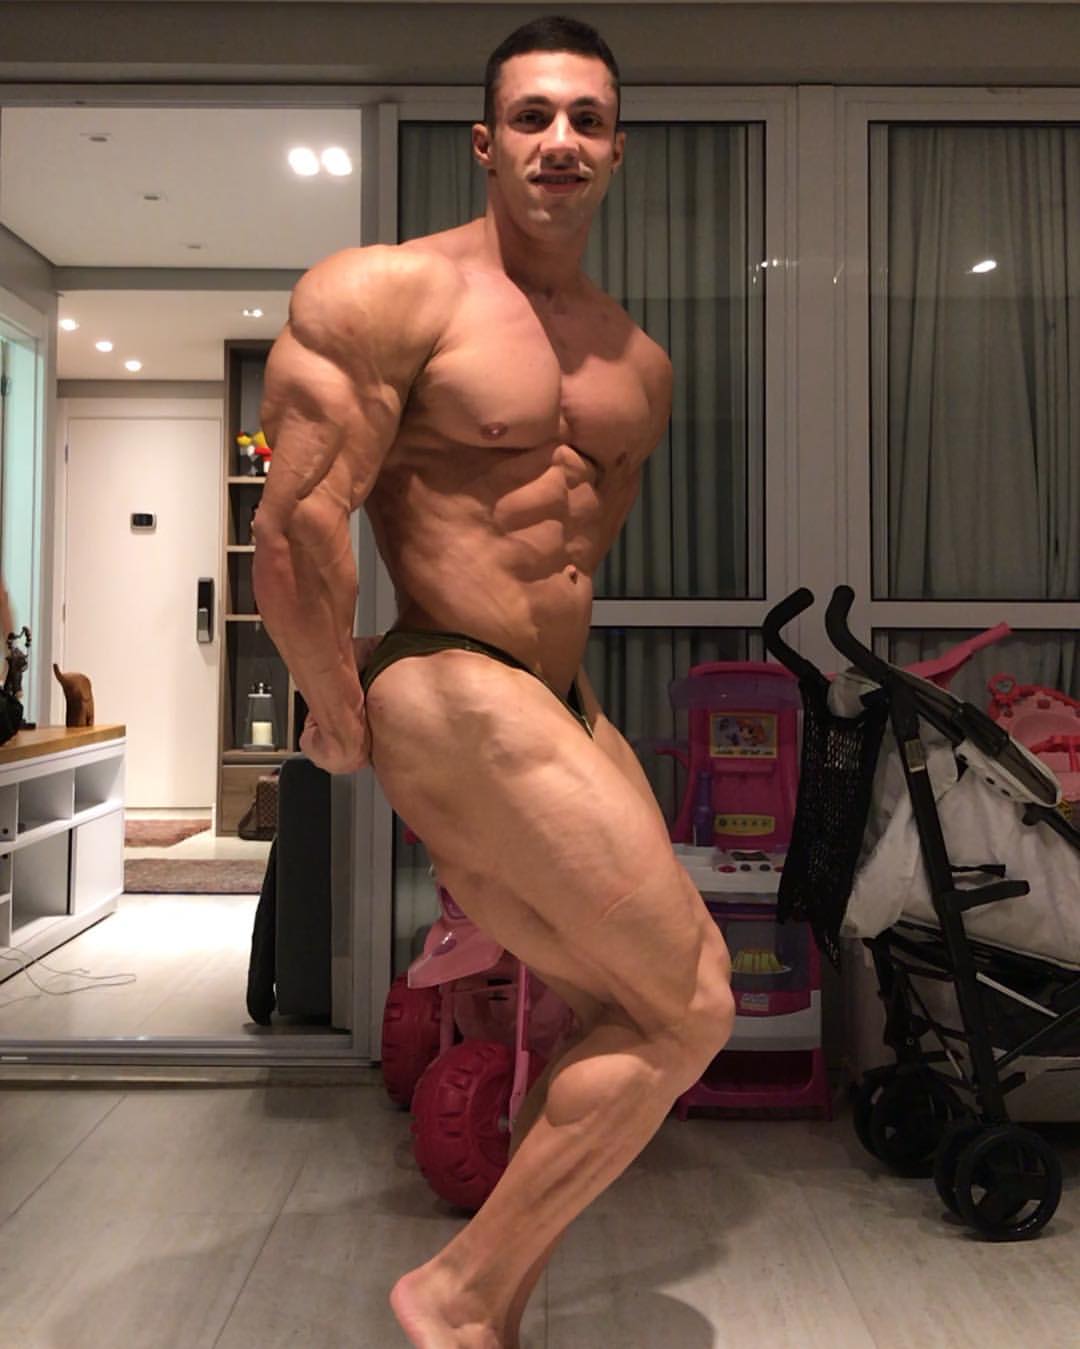 John lucas bodybuilder height